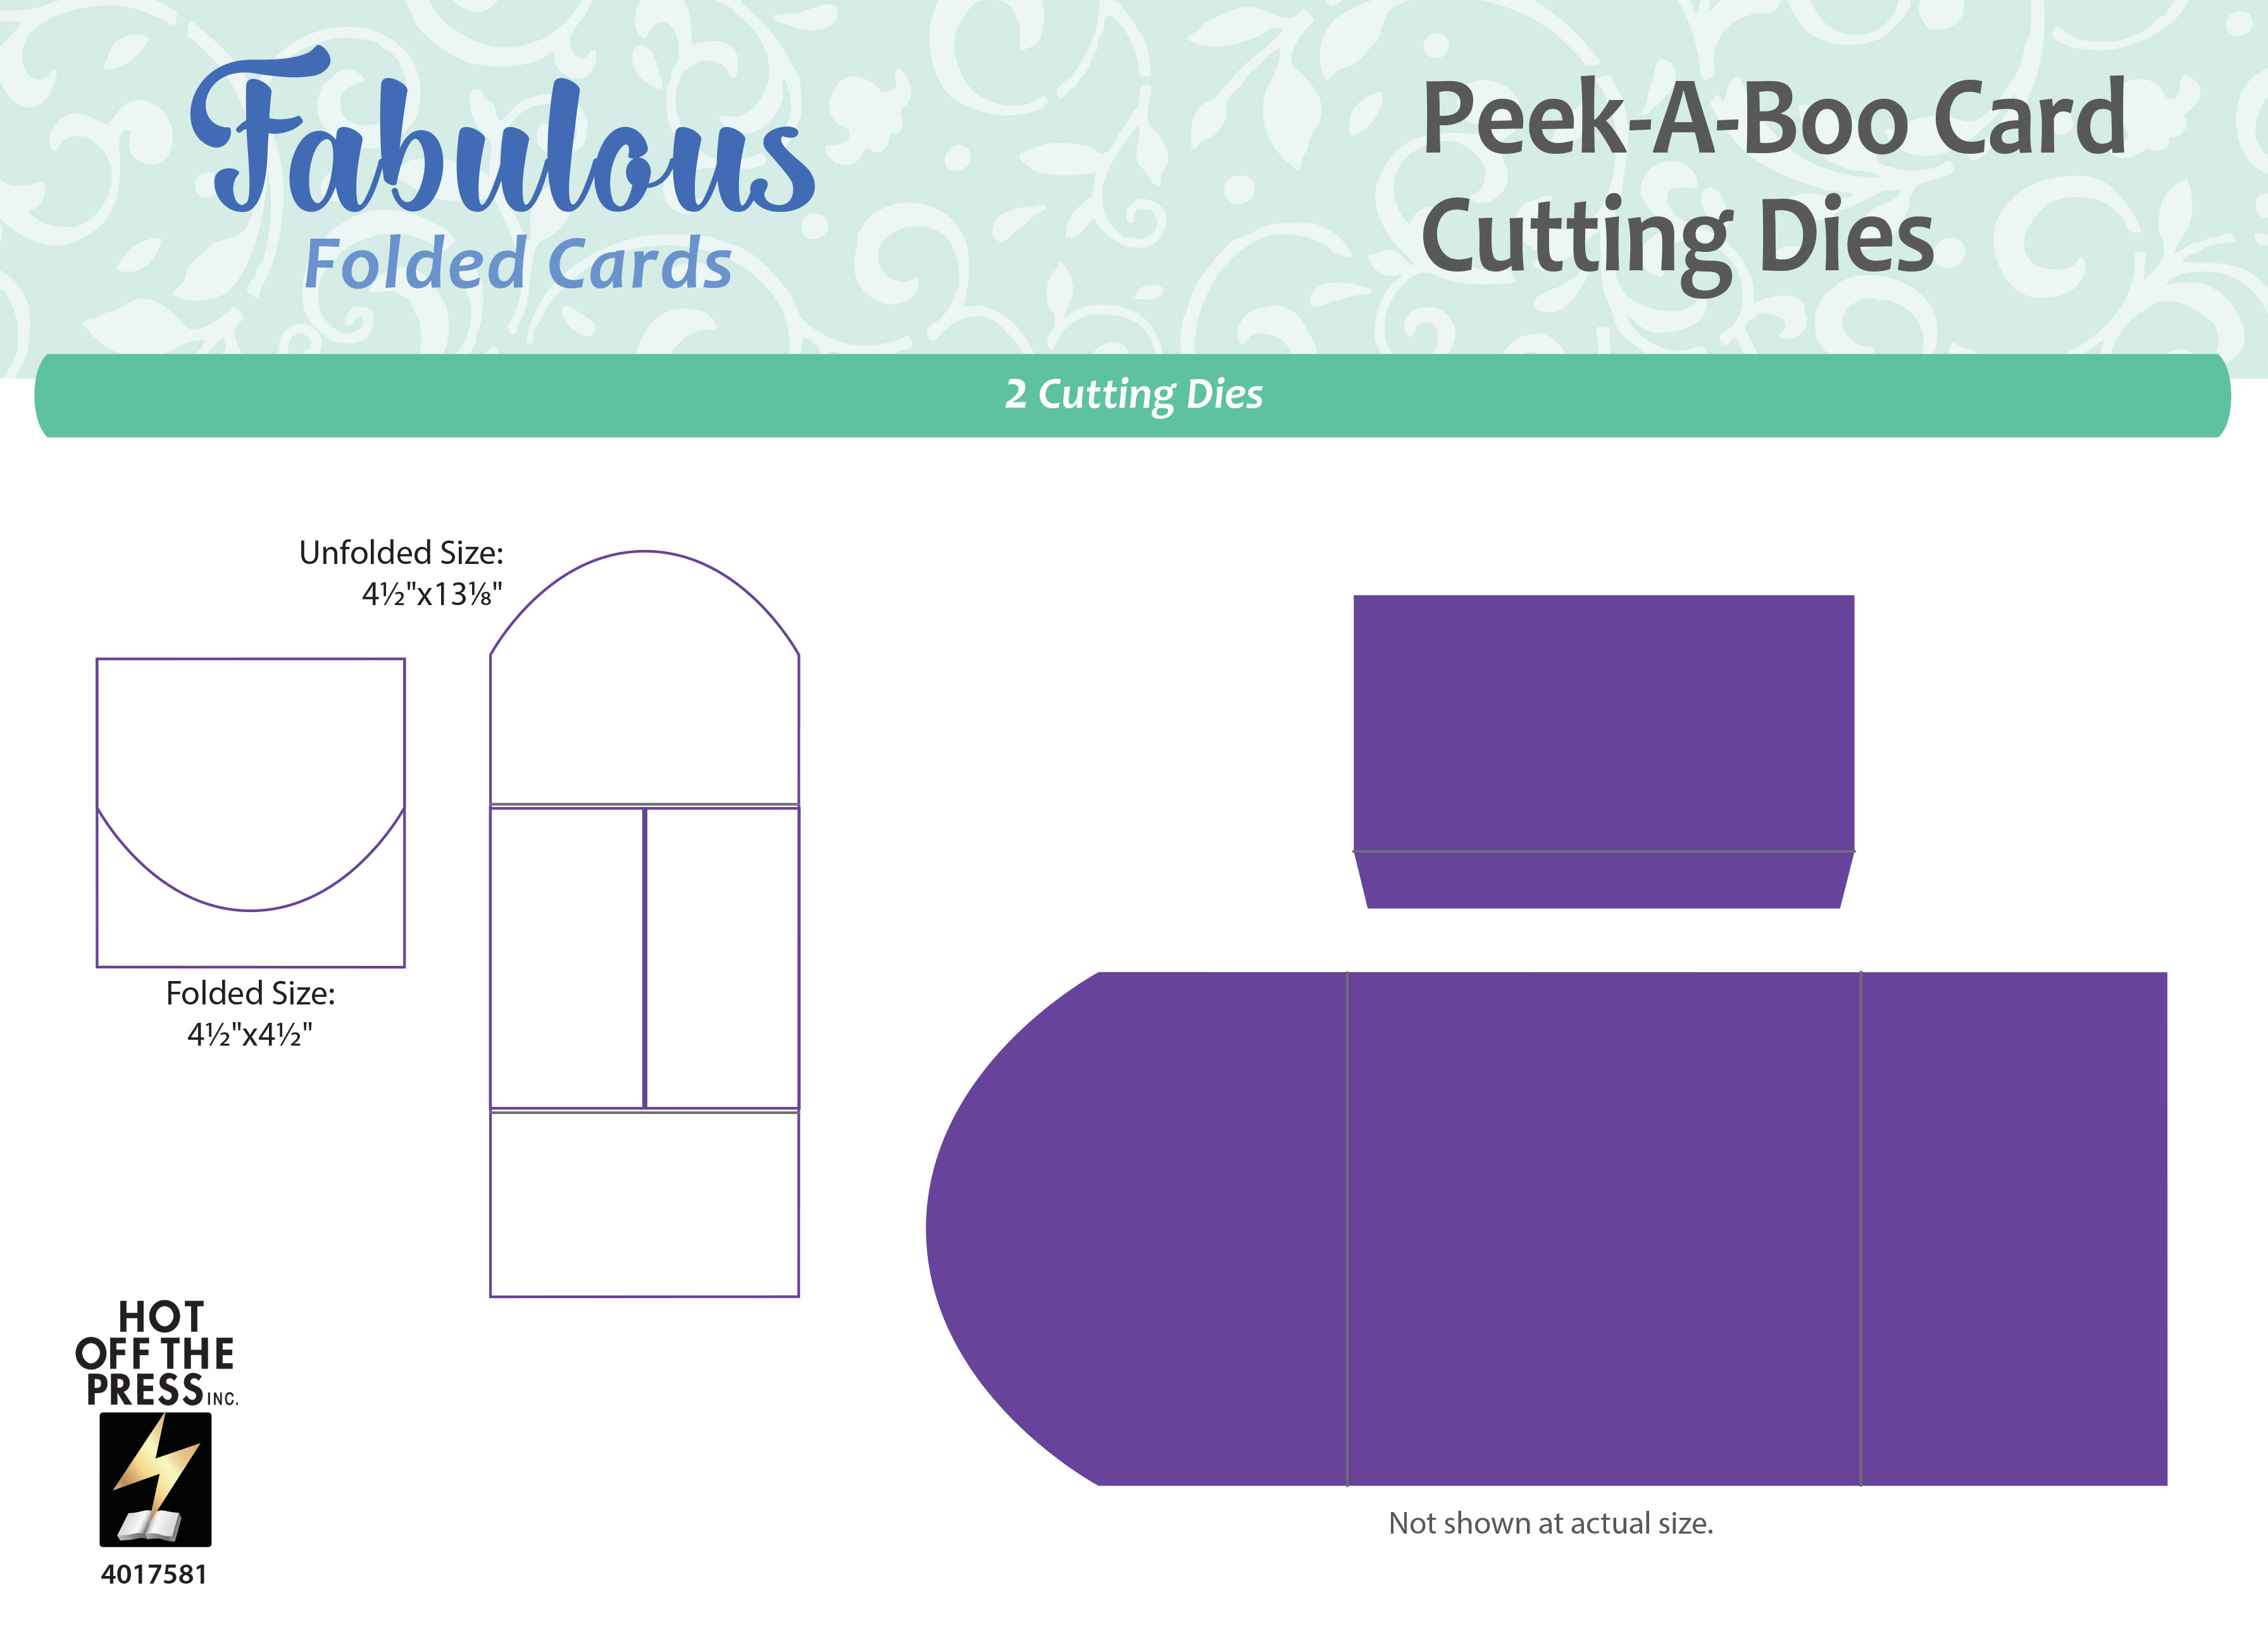 Peek-A-Boo Card Cutting Dies